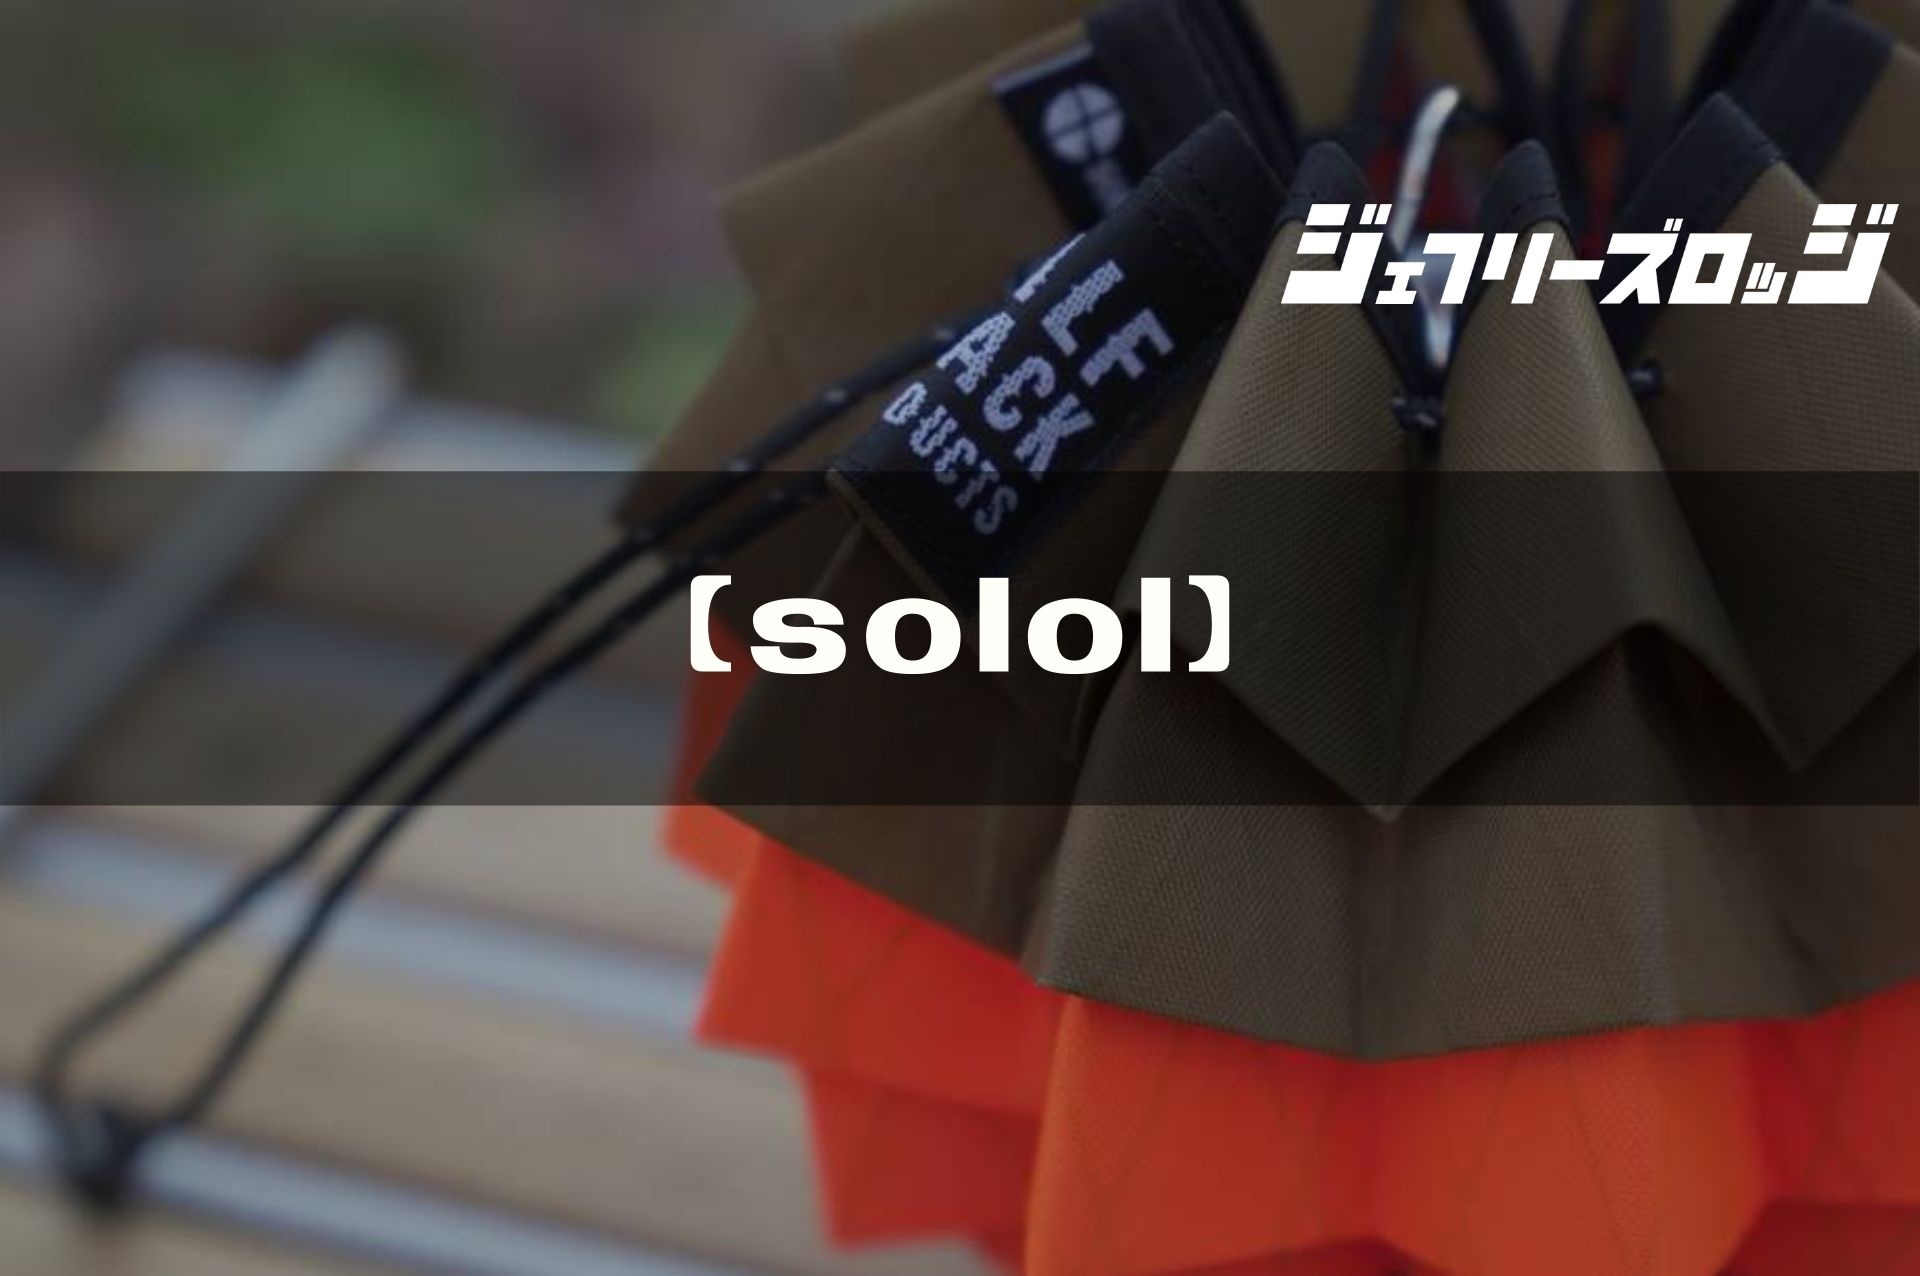 【solol】芸術品レベルのLEDランタン用シェード by solworks